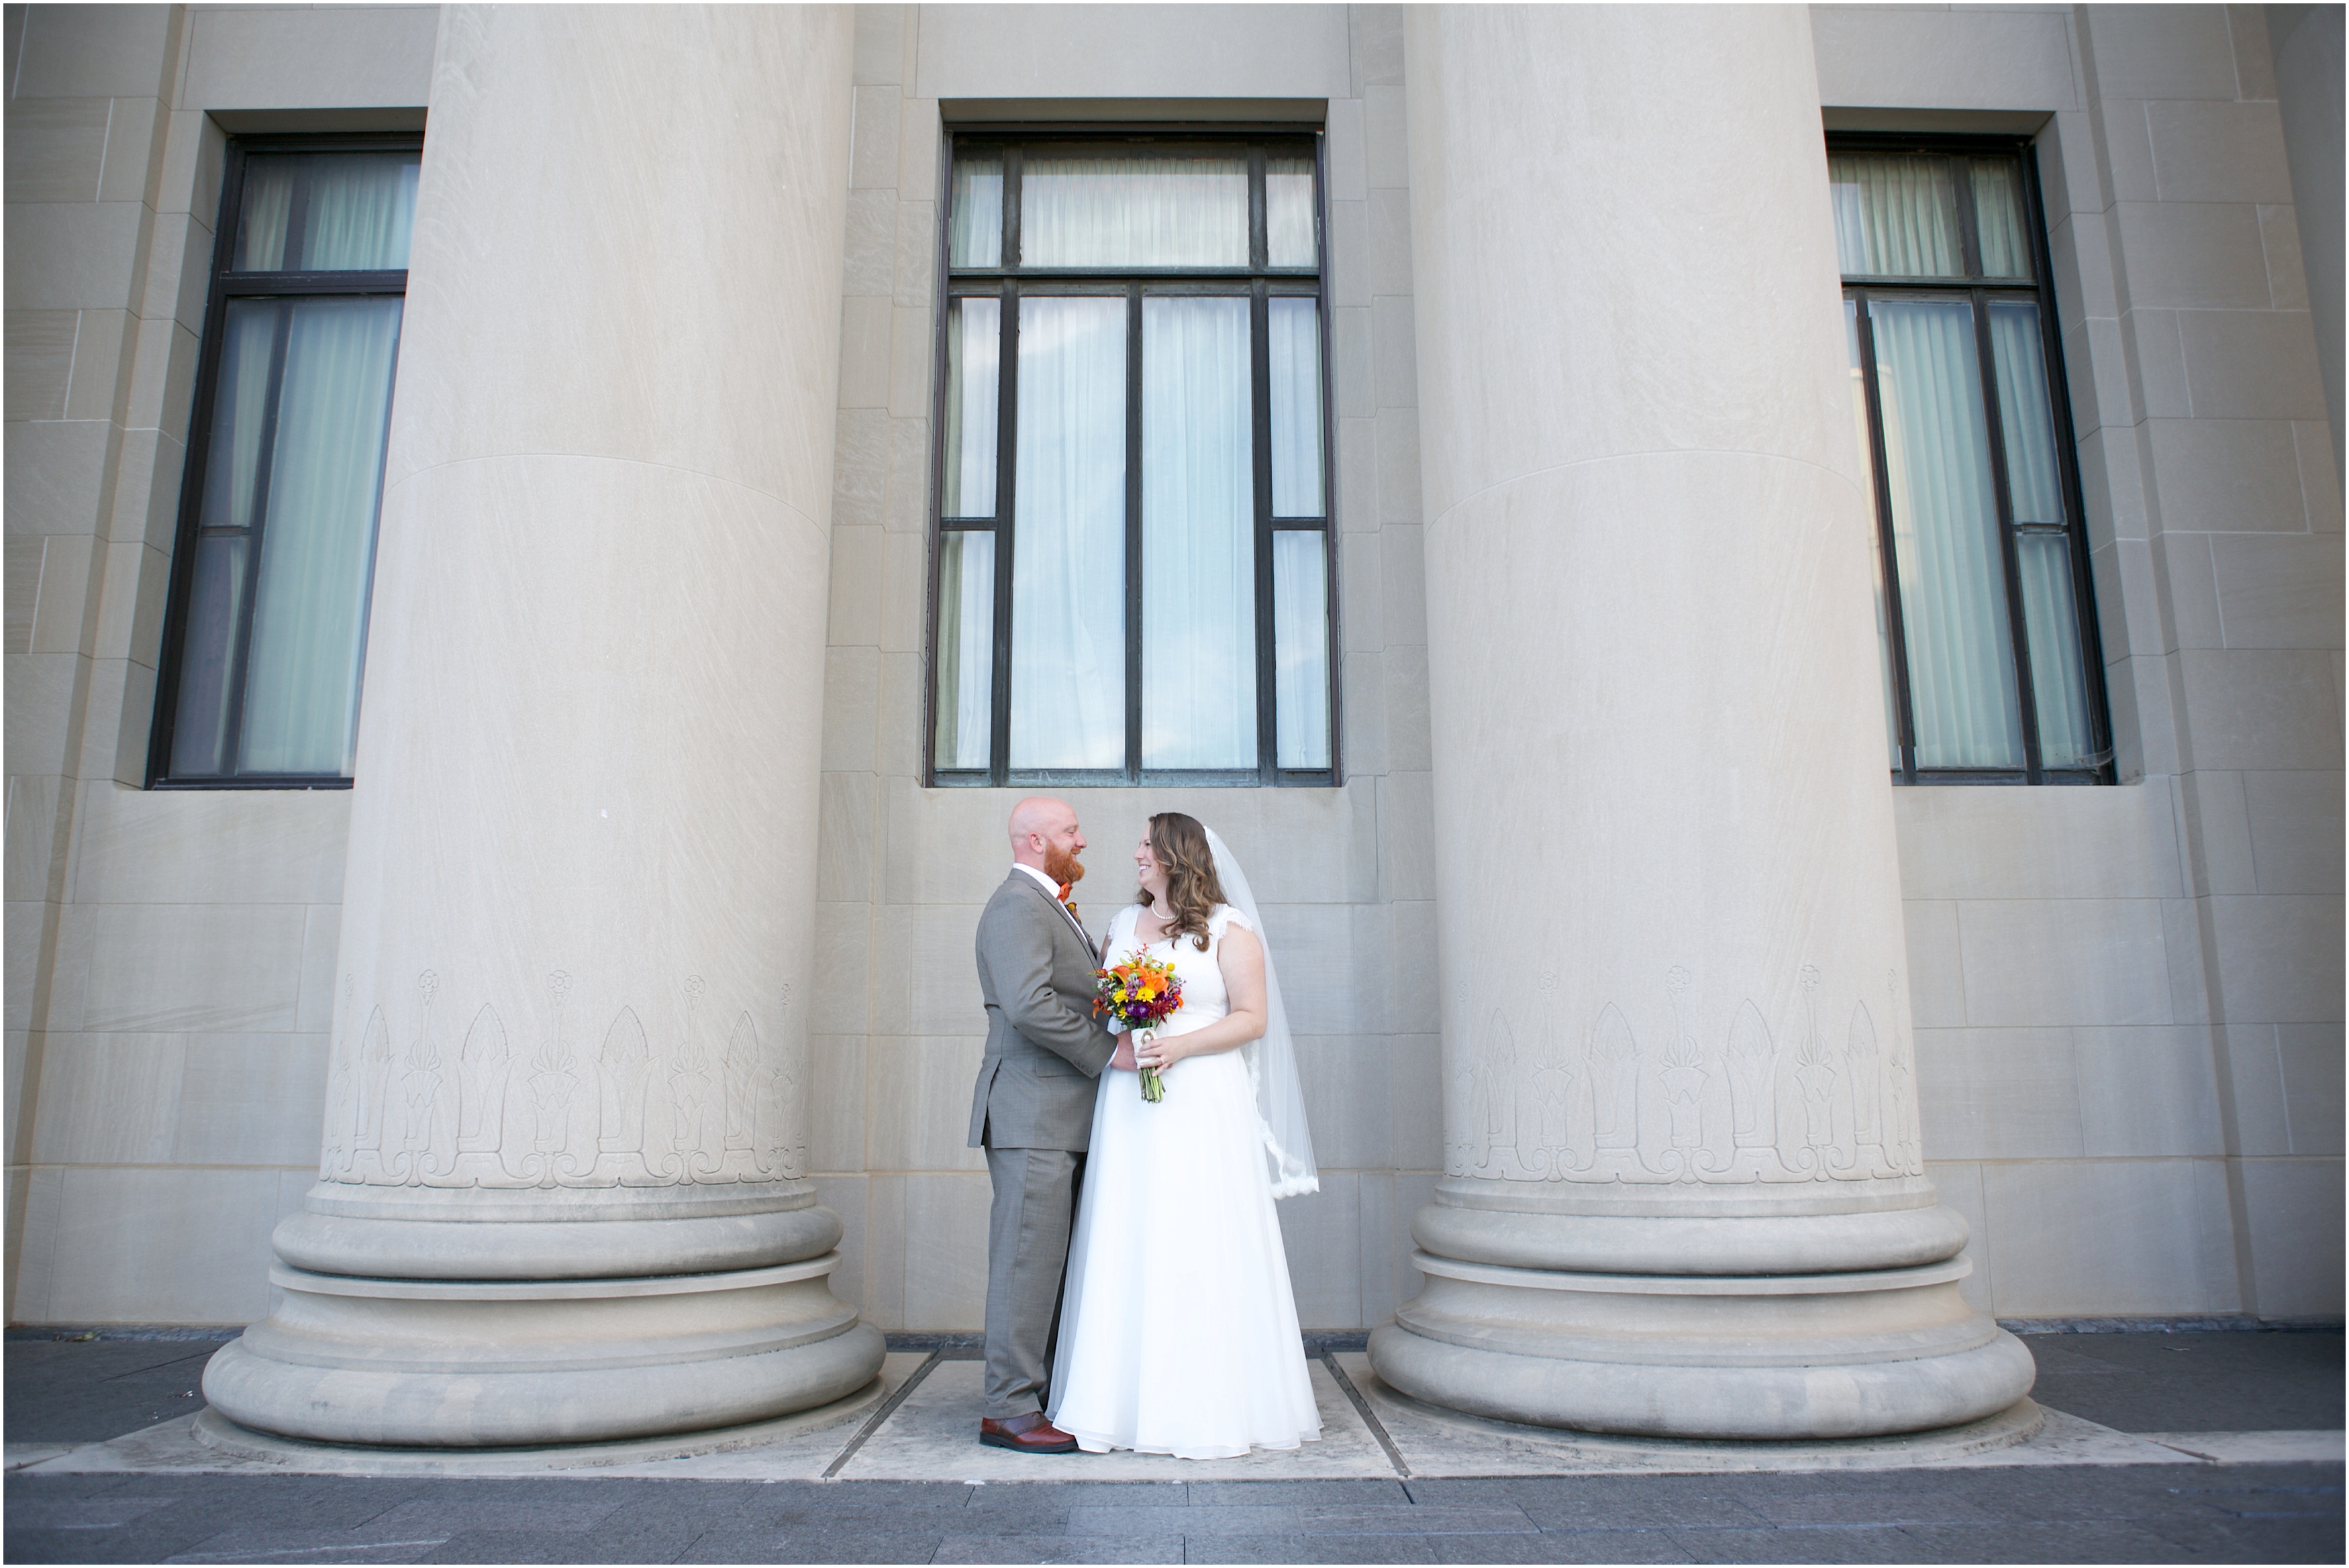 James & Allison | The Csonka Wedding